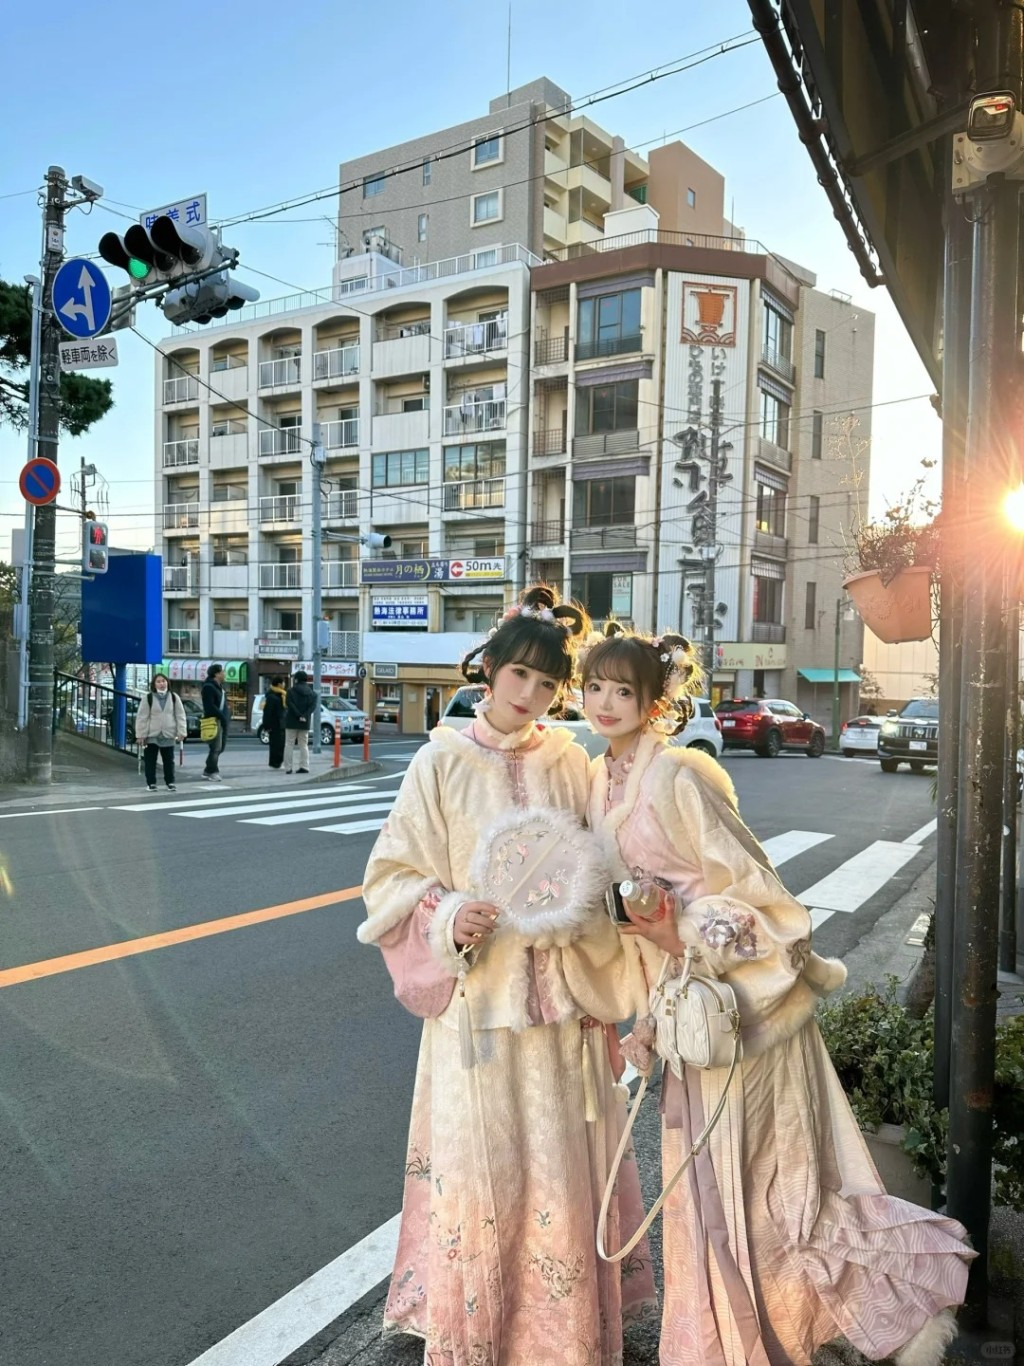 內地有網美在日本以漢服示人獲不少當地人讚「卡哇伊」。小紅書